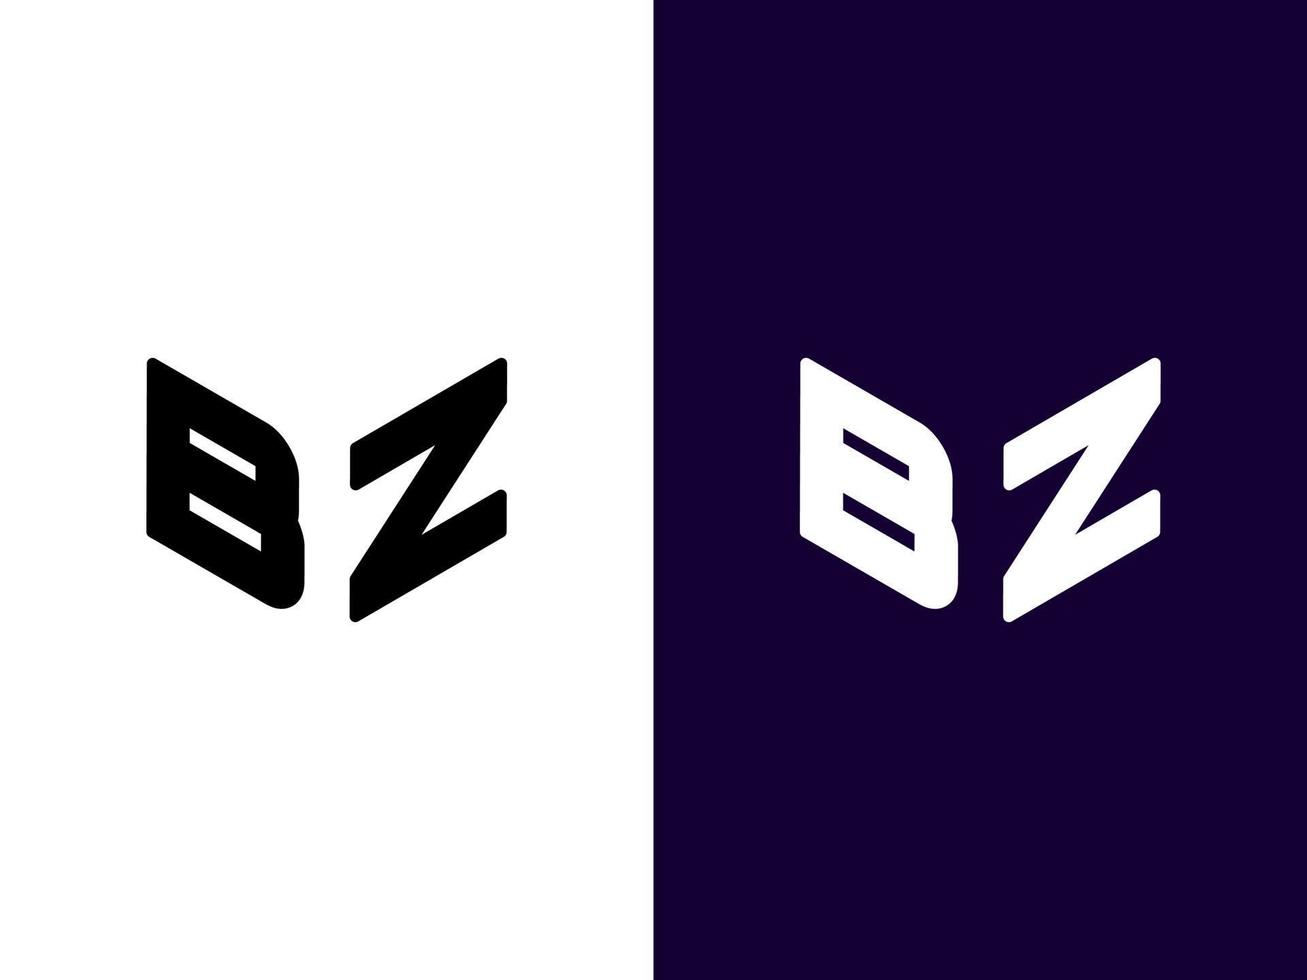 letra inicial bz design de logotipo 3d minimalista e moderno vetor